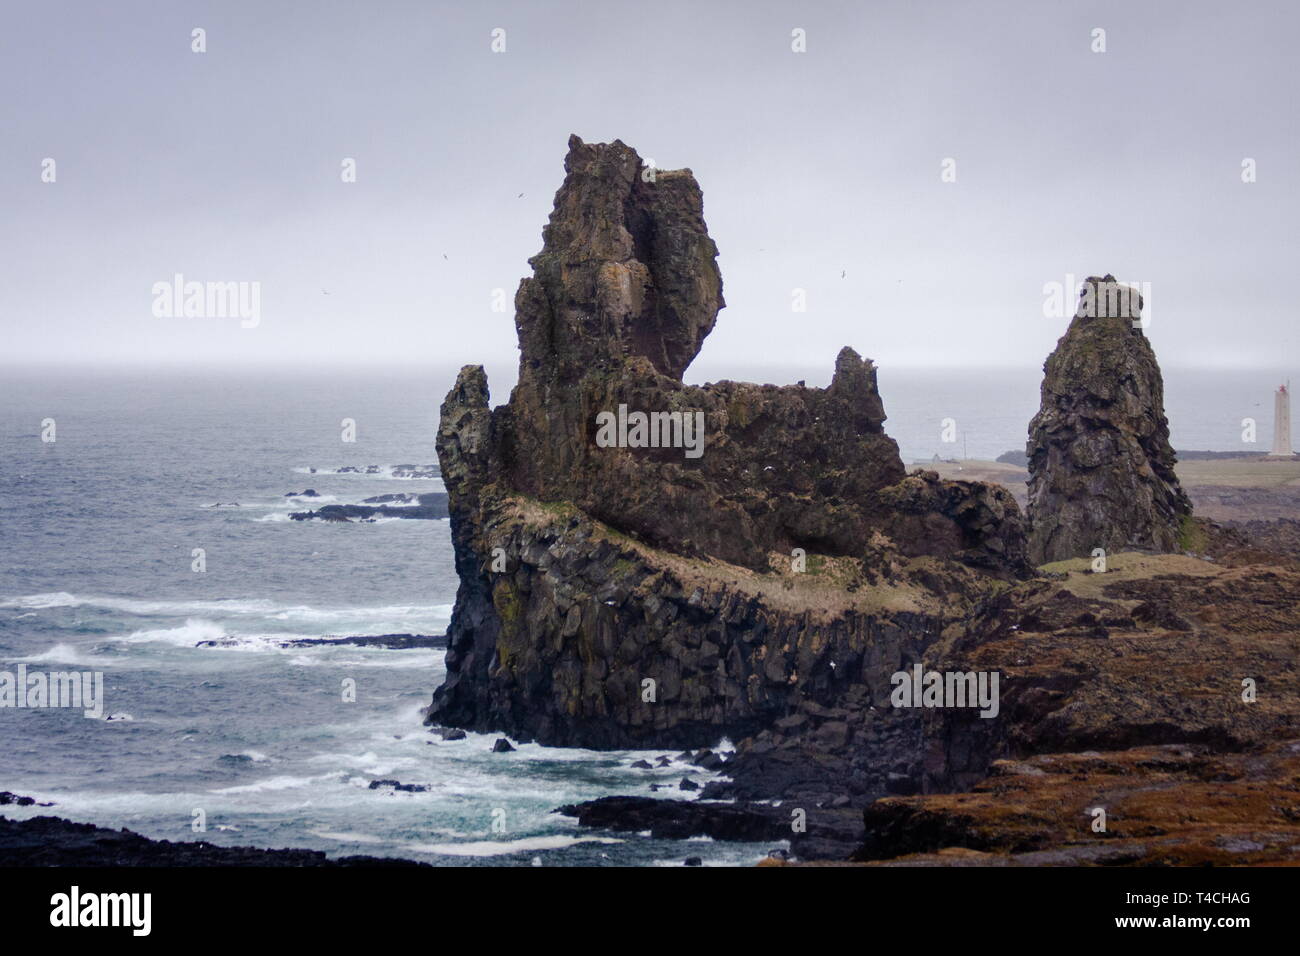 Paysage avec le rock gothique, ligne d'horizon, l'océan, et les nuages élevés - Islande Banque D'Images